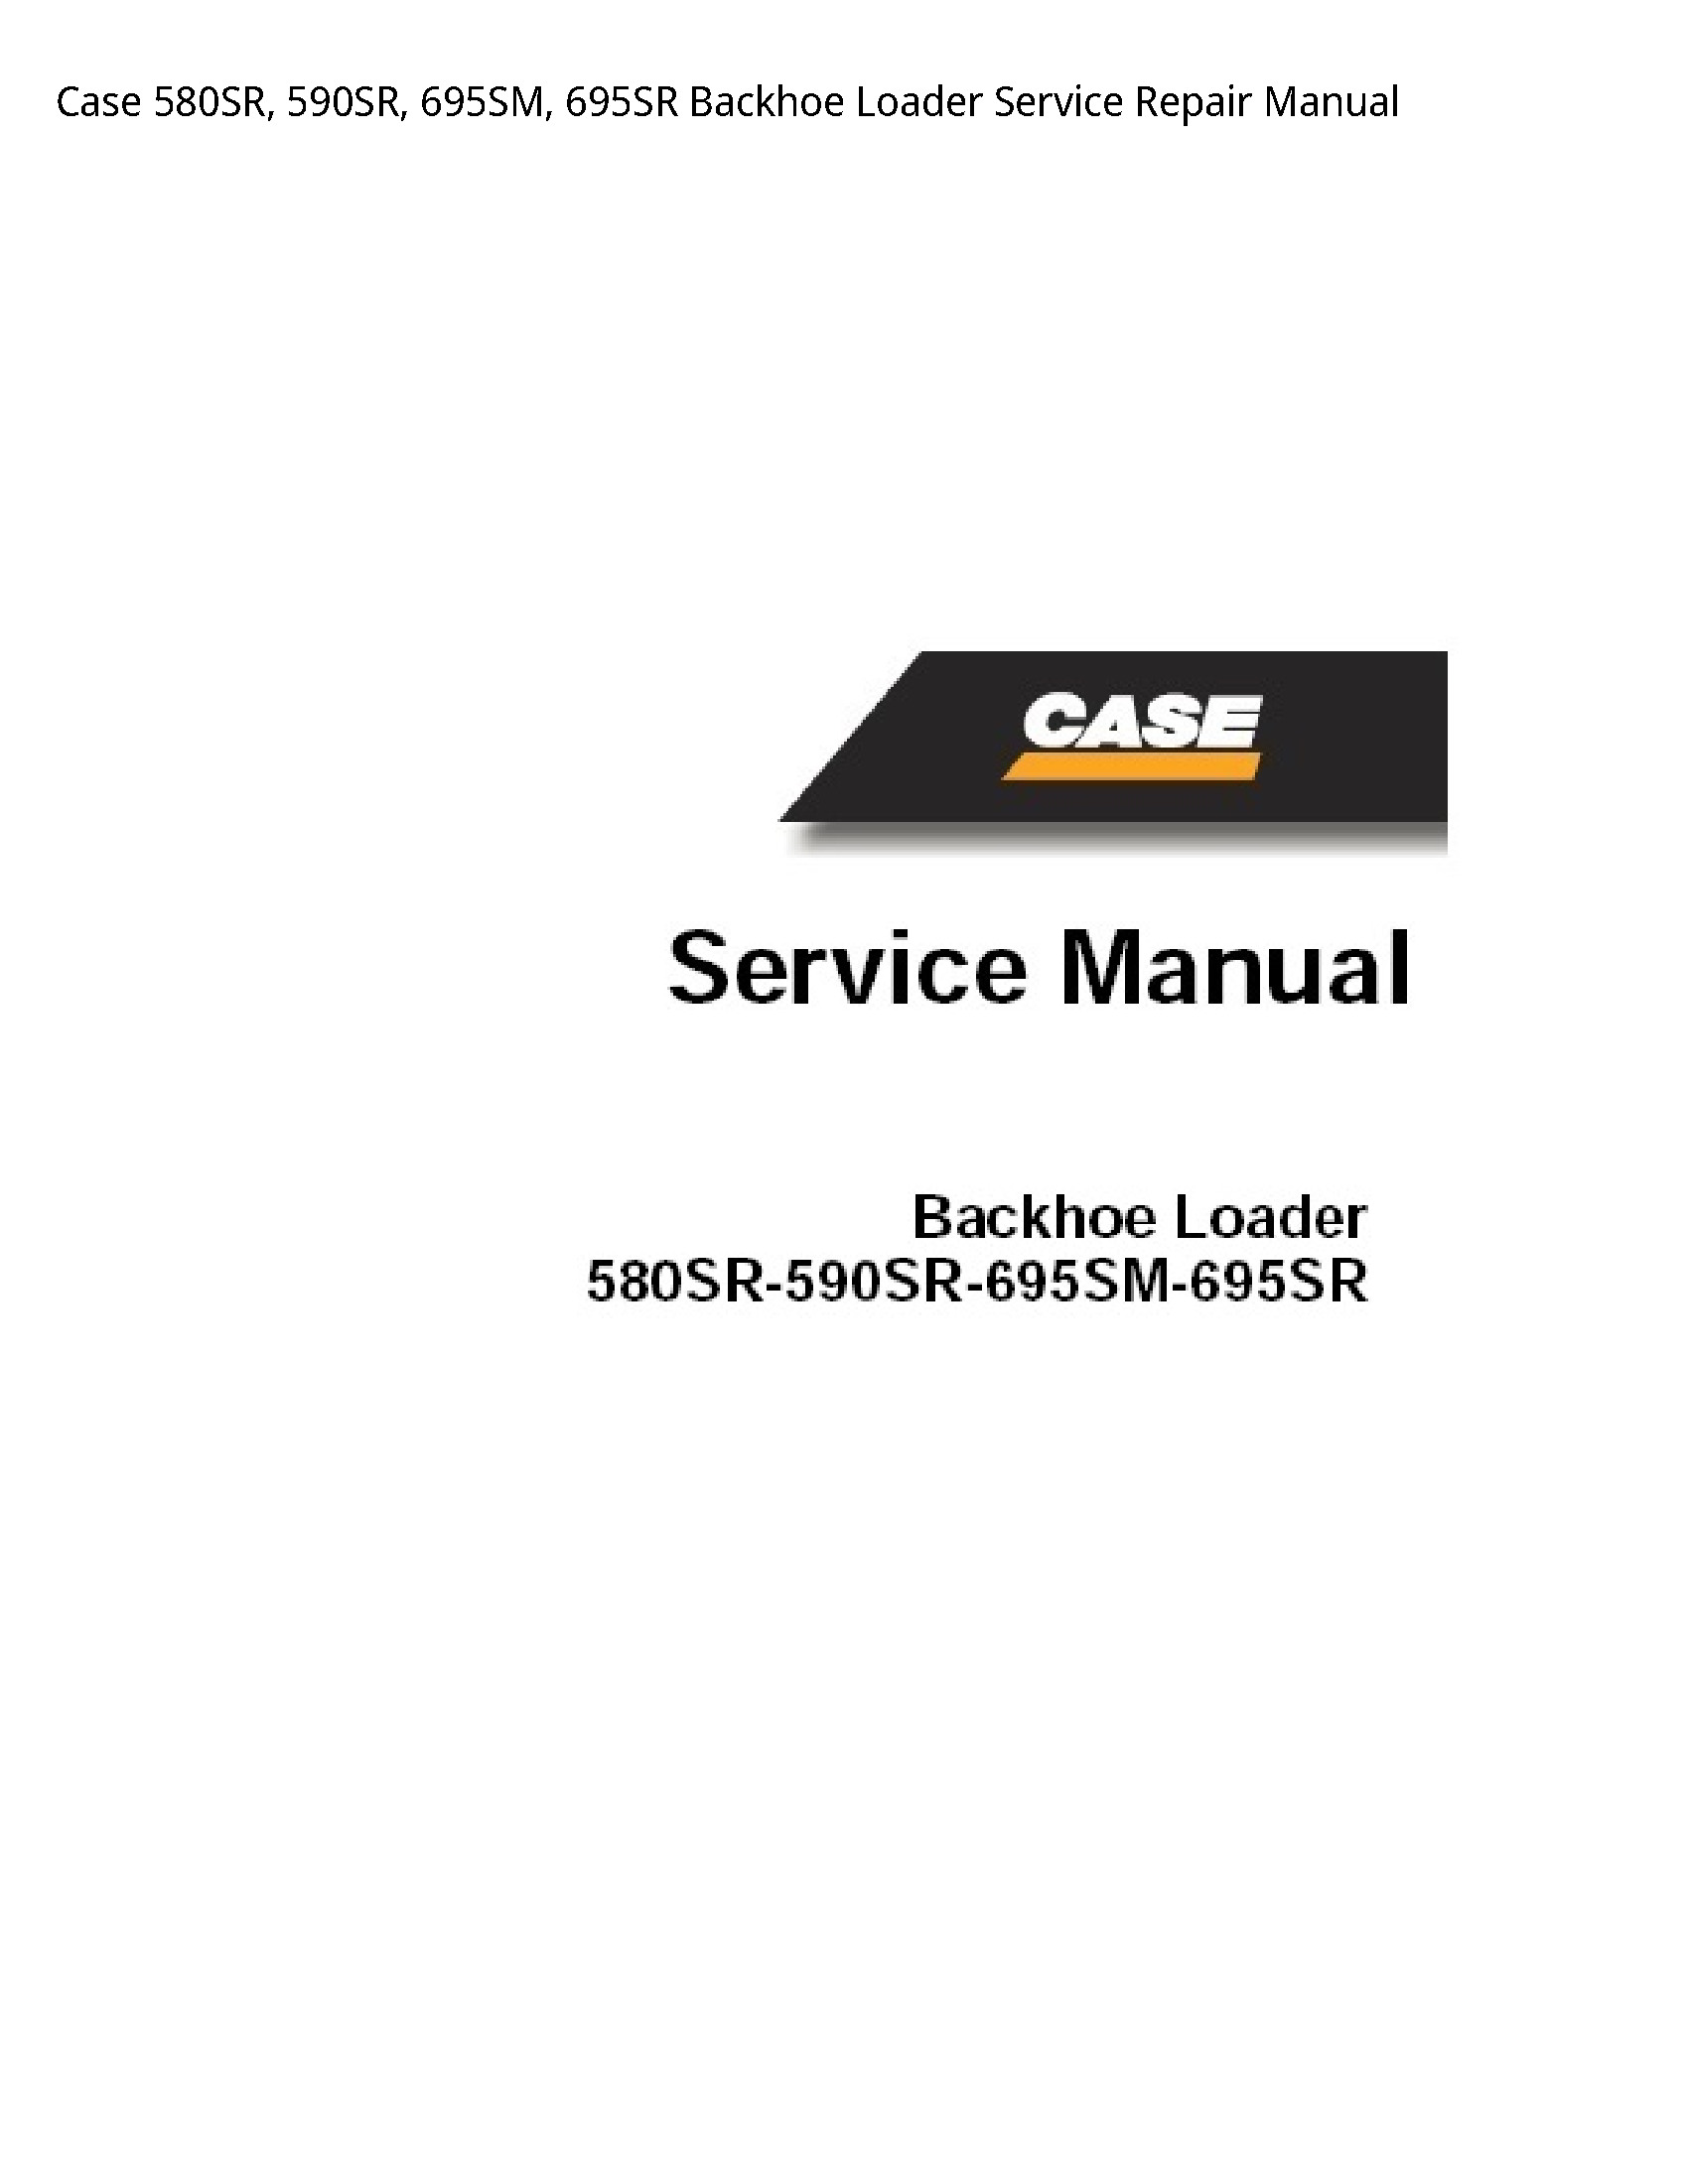 Case/Case IH 580SR Backhoe Loader manual